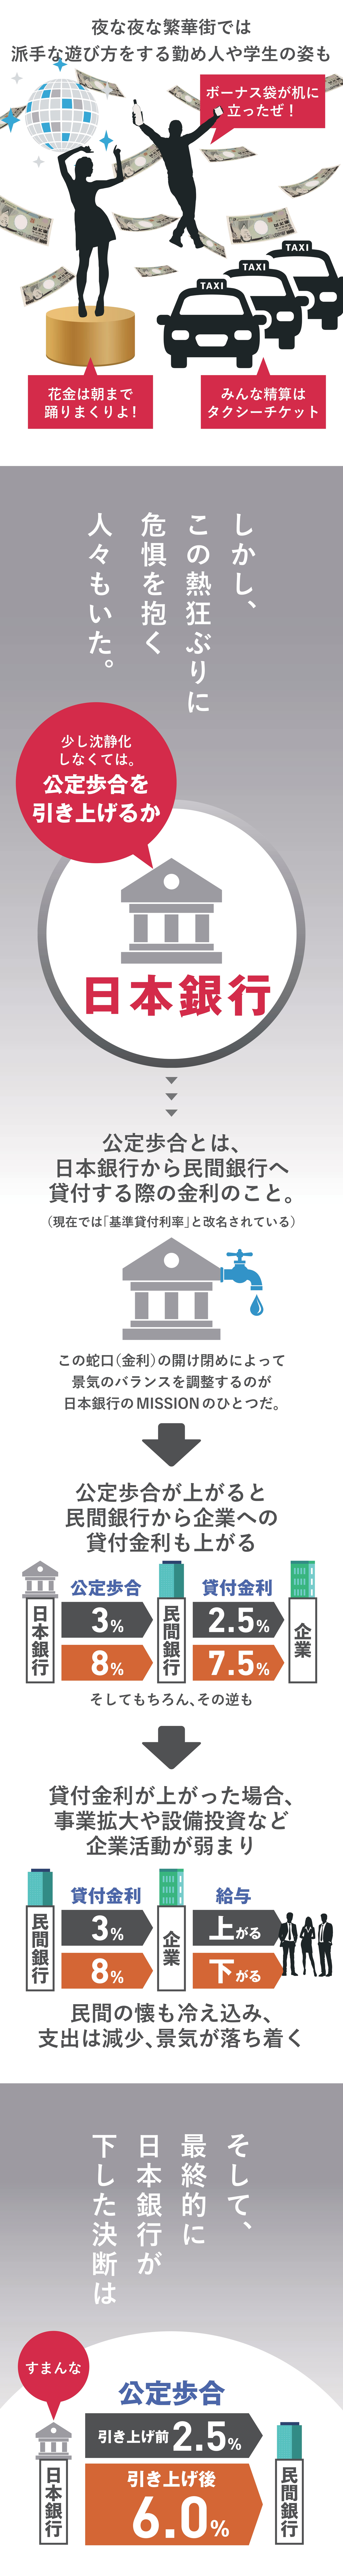 日本銀行の公定歩合と貸付金利のことならロンたす